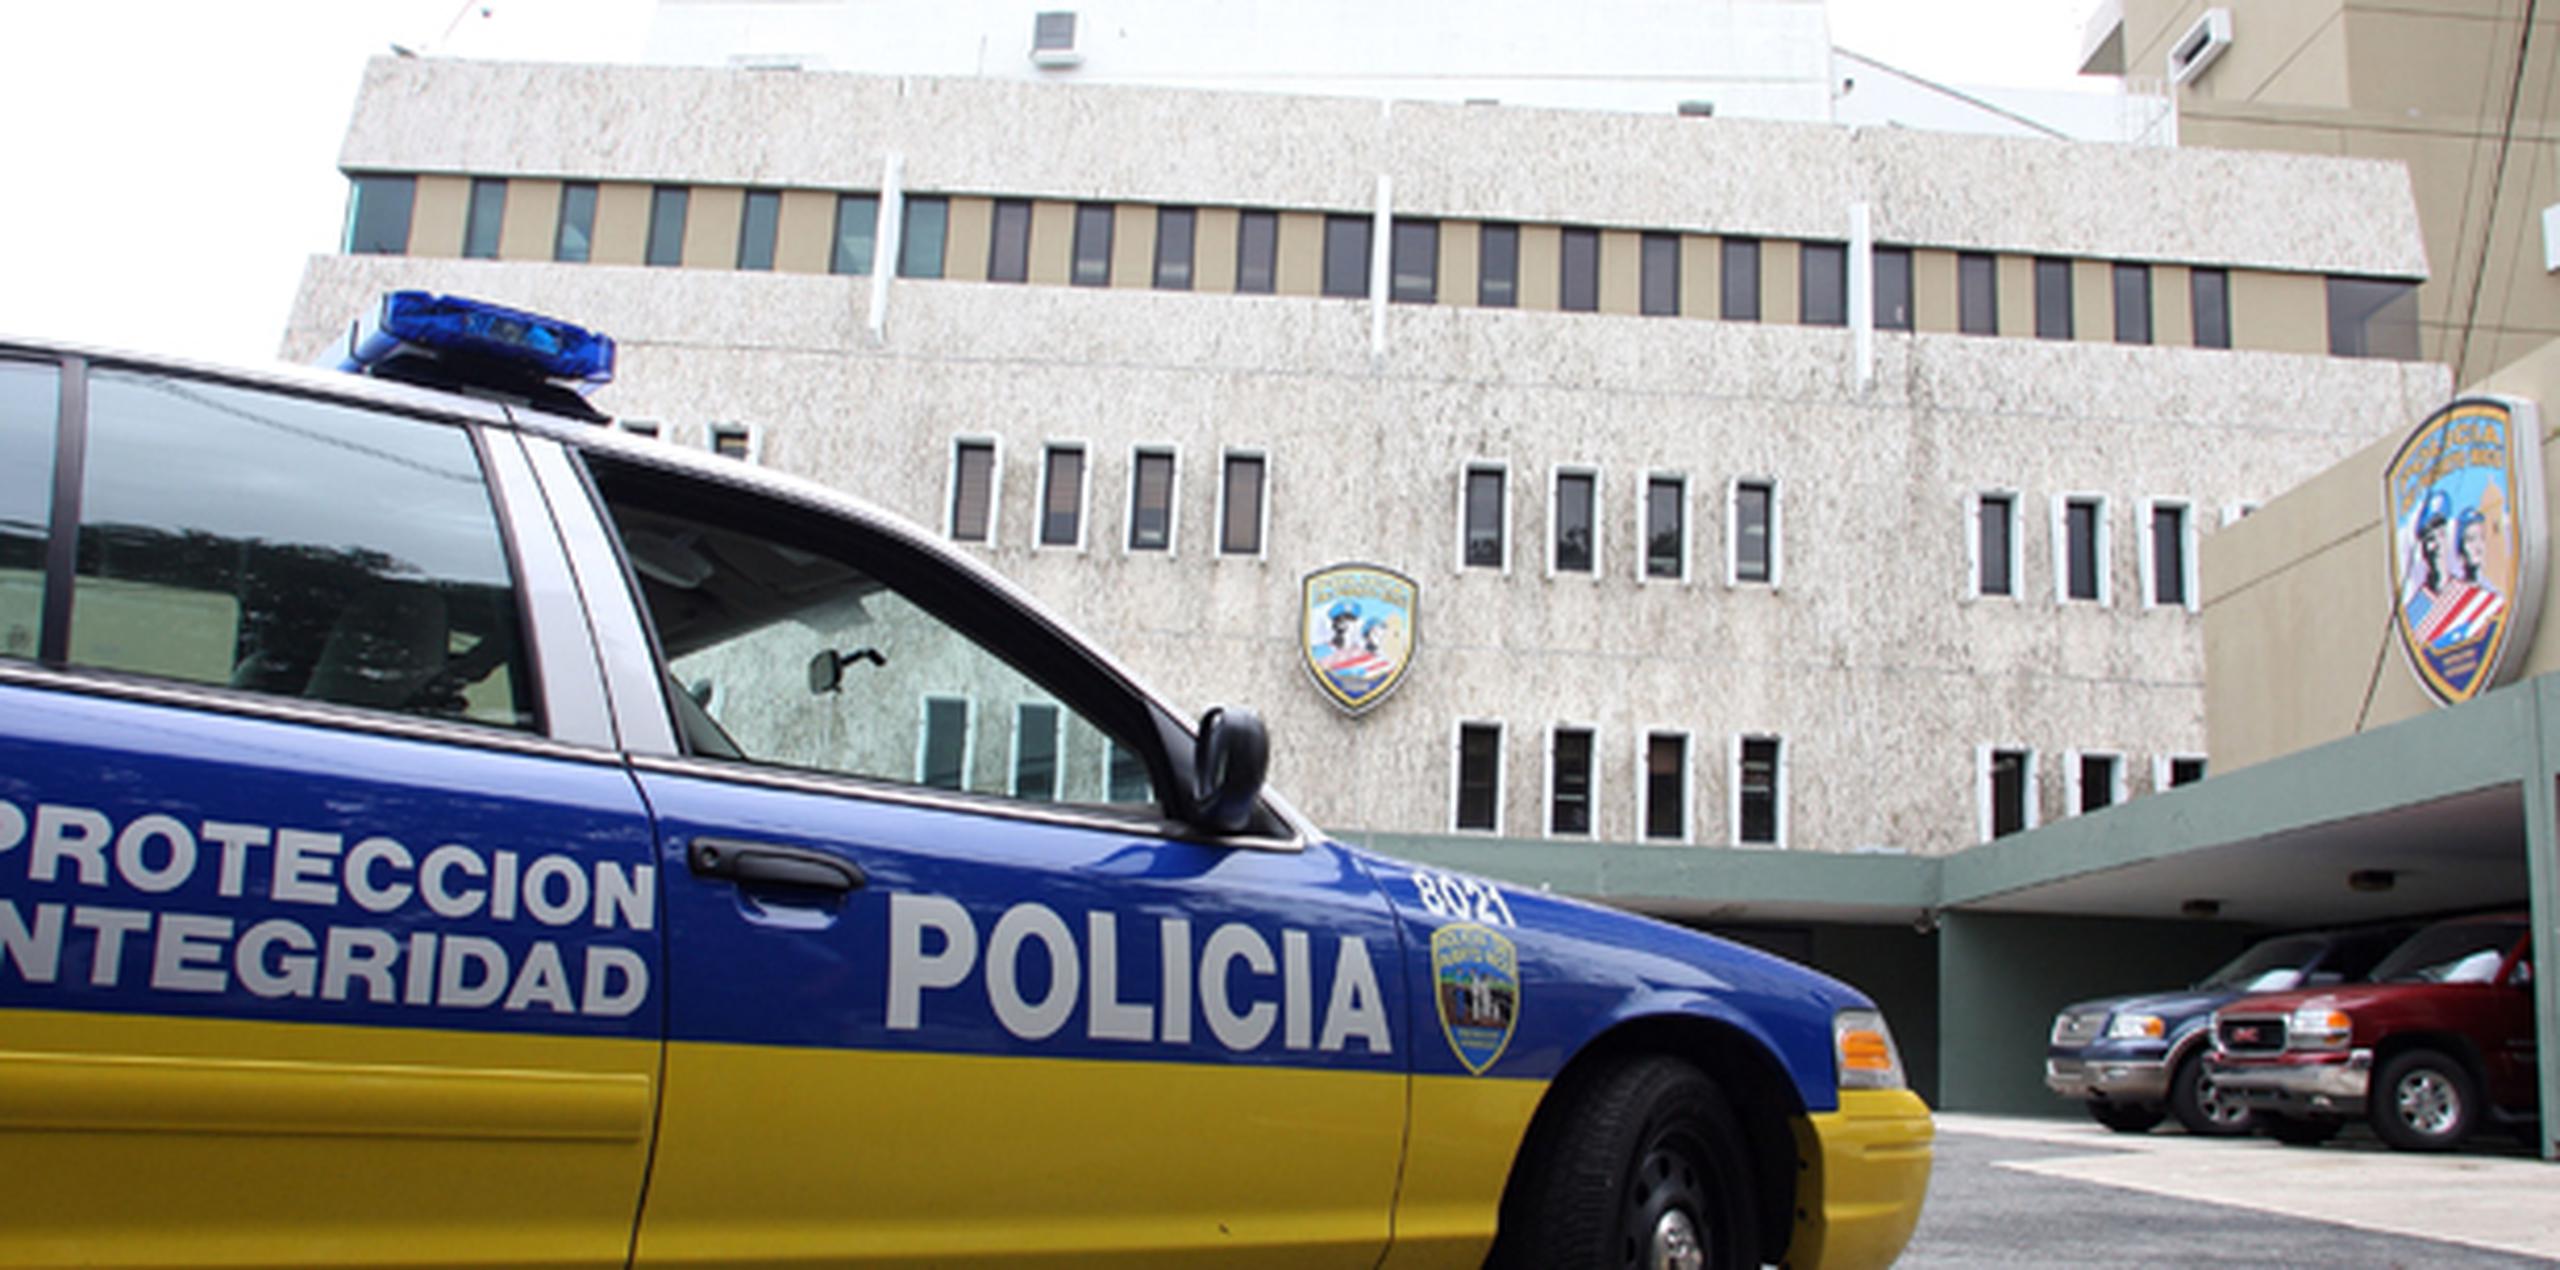 La pesquisa sería referida al Cuerpo de Investigaciones Criminales (CIC), del Área de Arecibo. (Archivo)